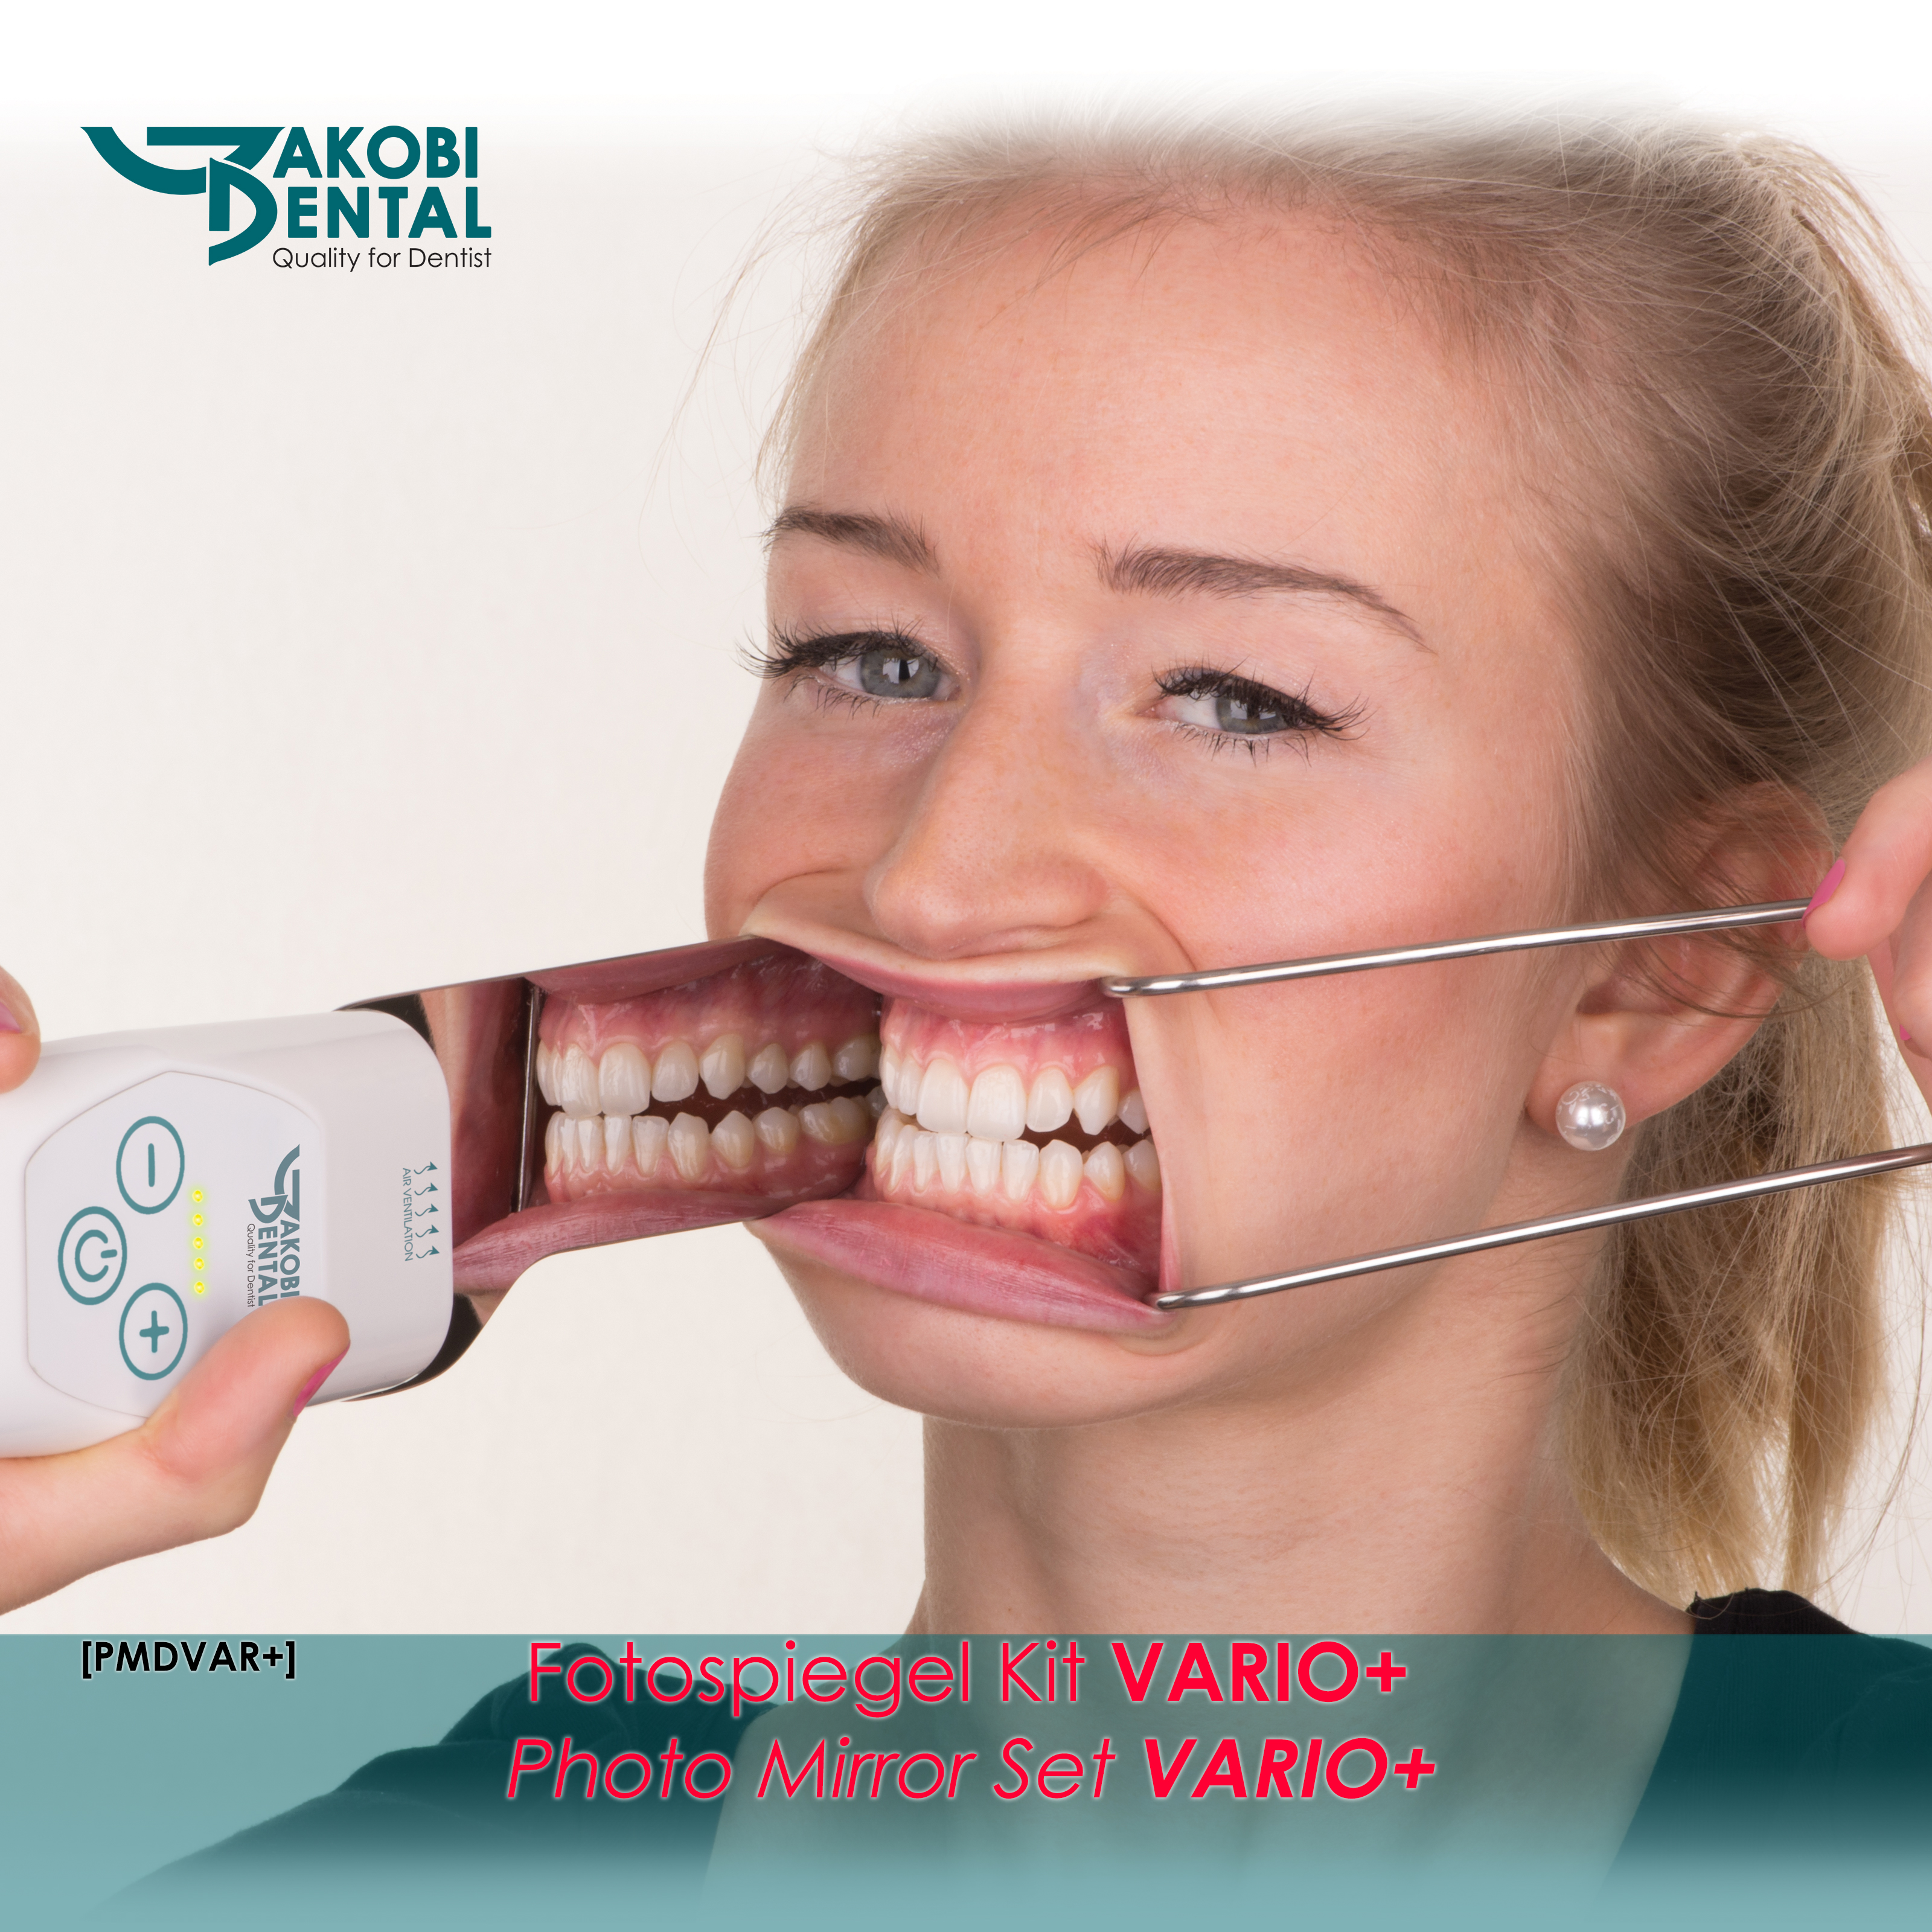 Fotospiegel-Dental Kit VARIO+ mit 3 Fotospiegel nach Wahl